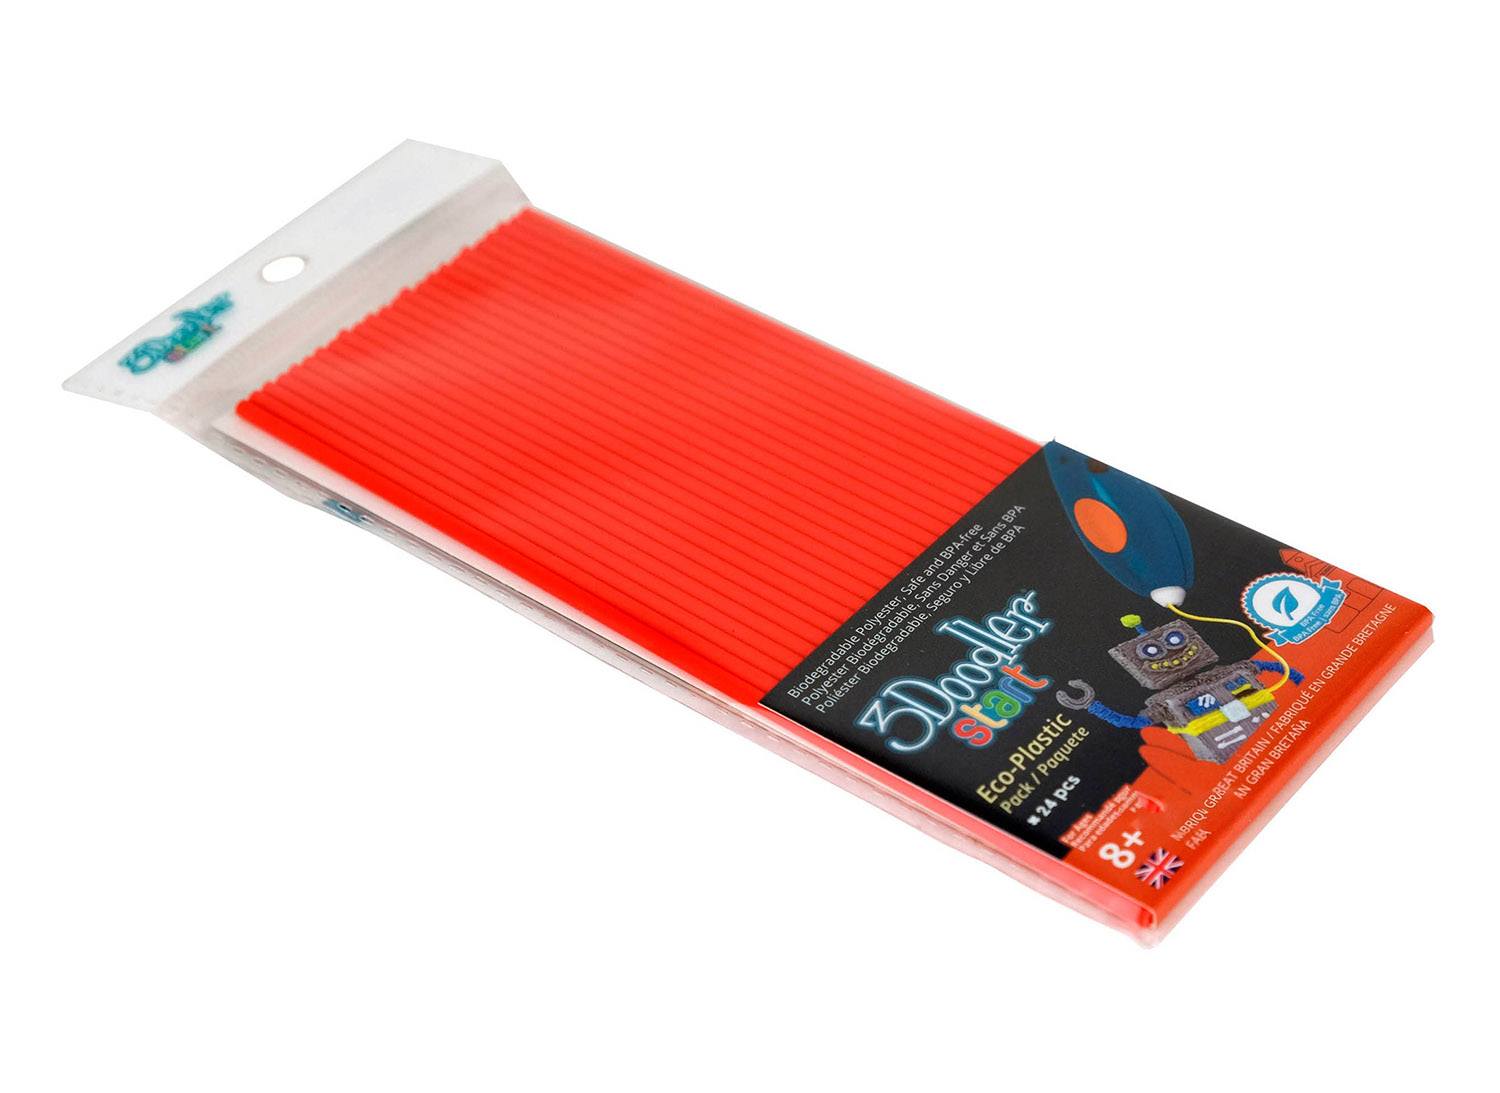 Пластик для 3D ручки 3Doodler эко-пластик, красный, 24 штуки (3DS-ECO03-RED-24), фото